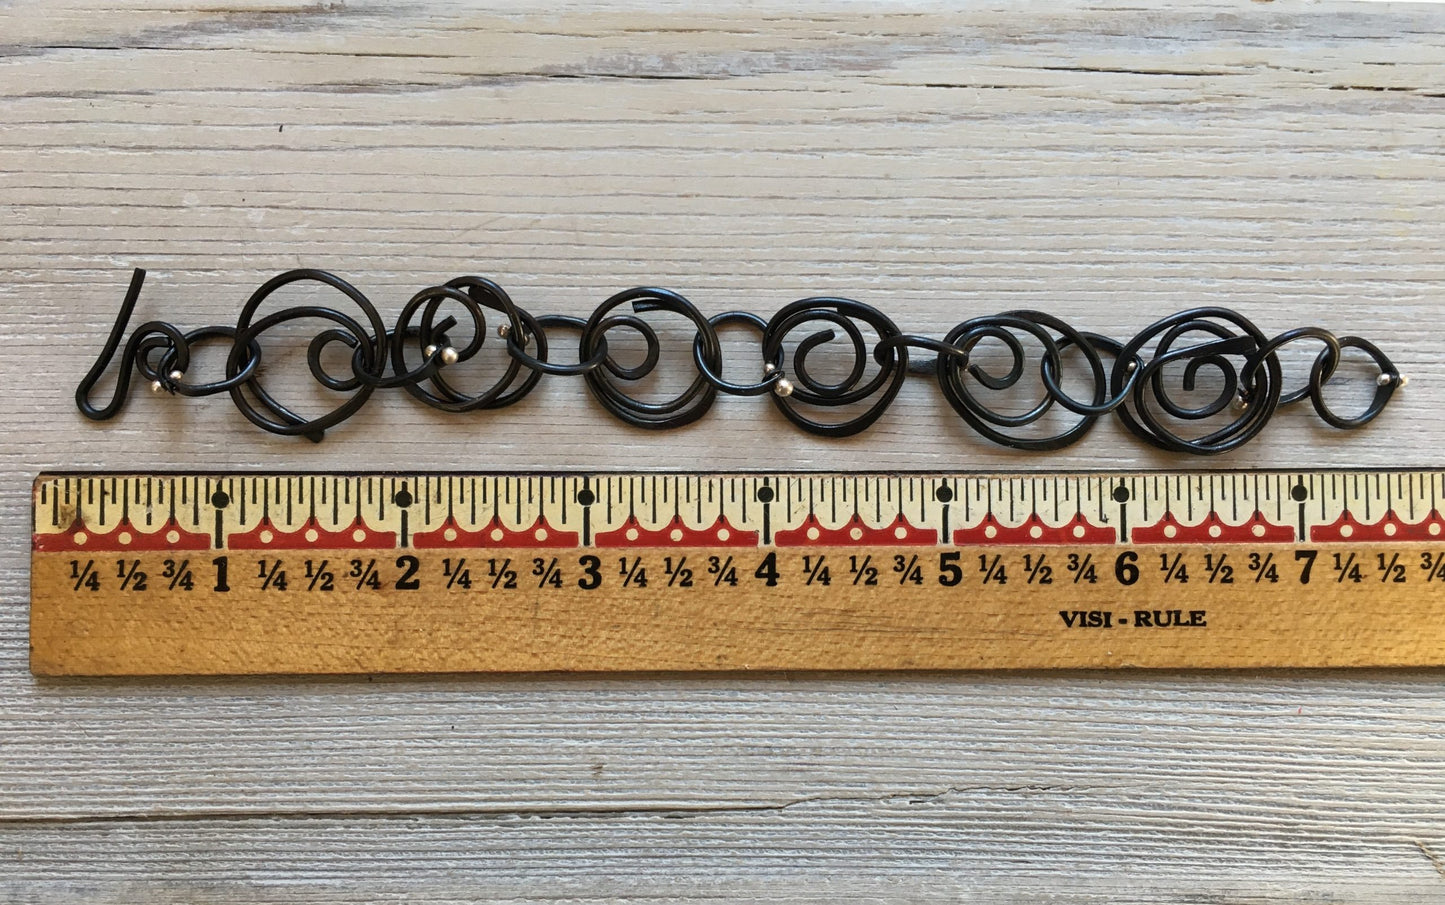 Spiral Bracelet